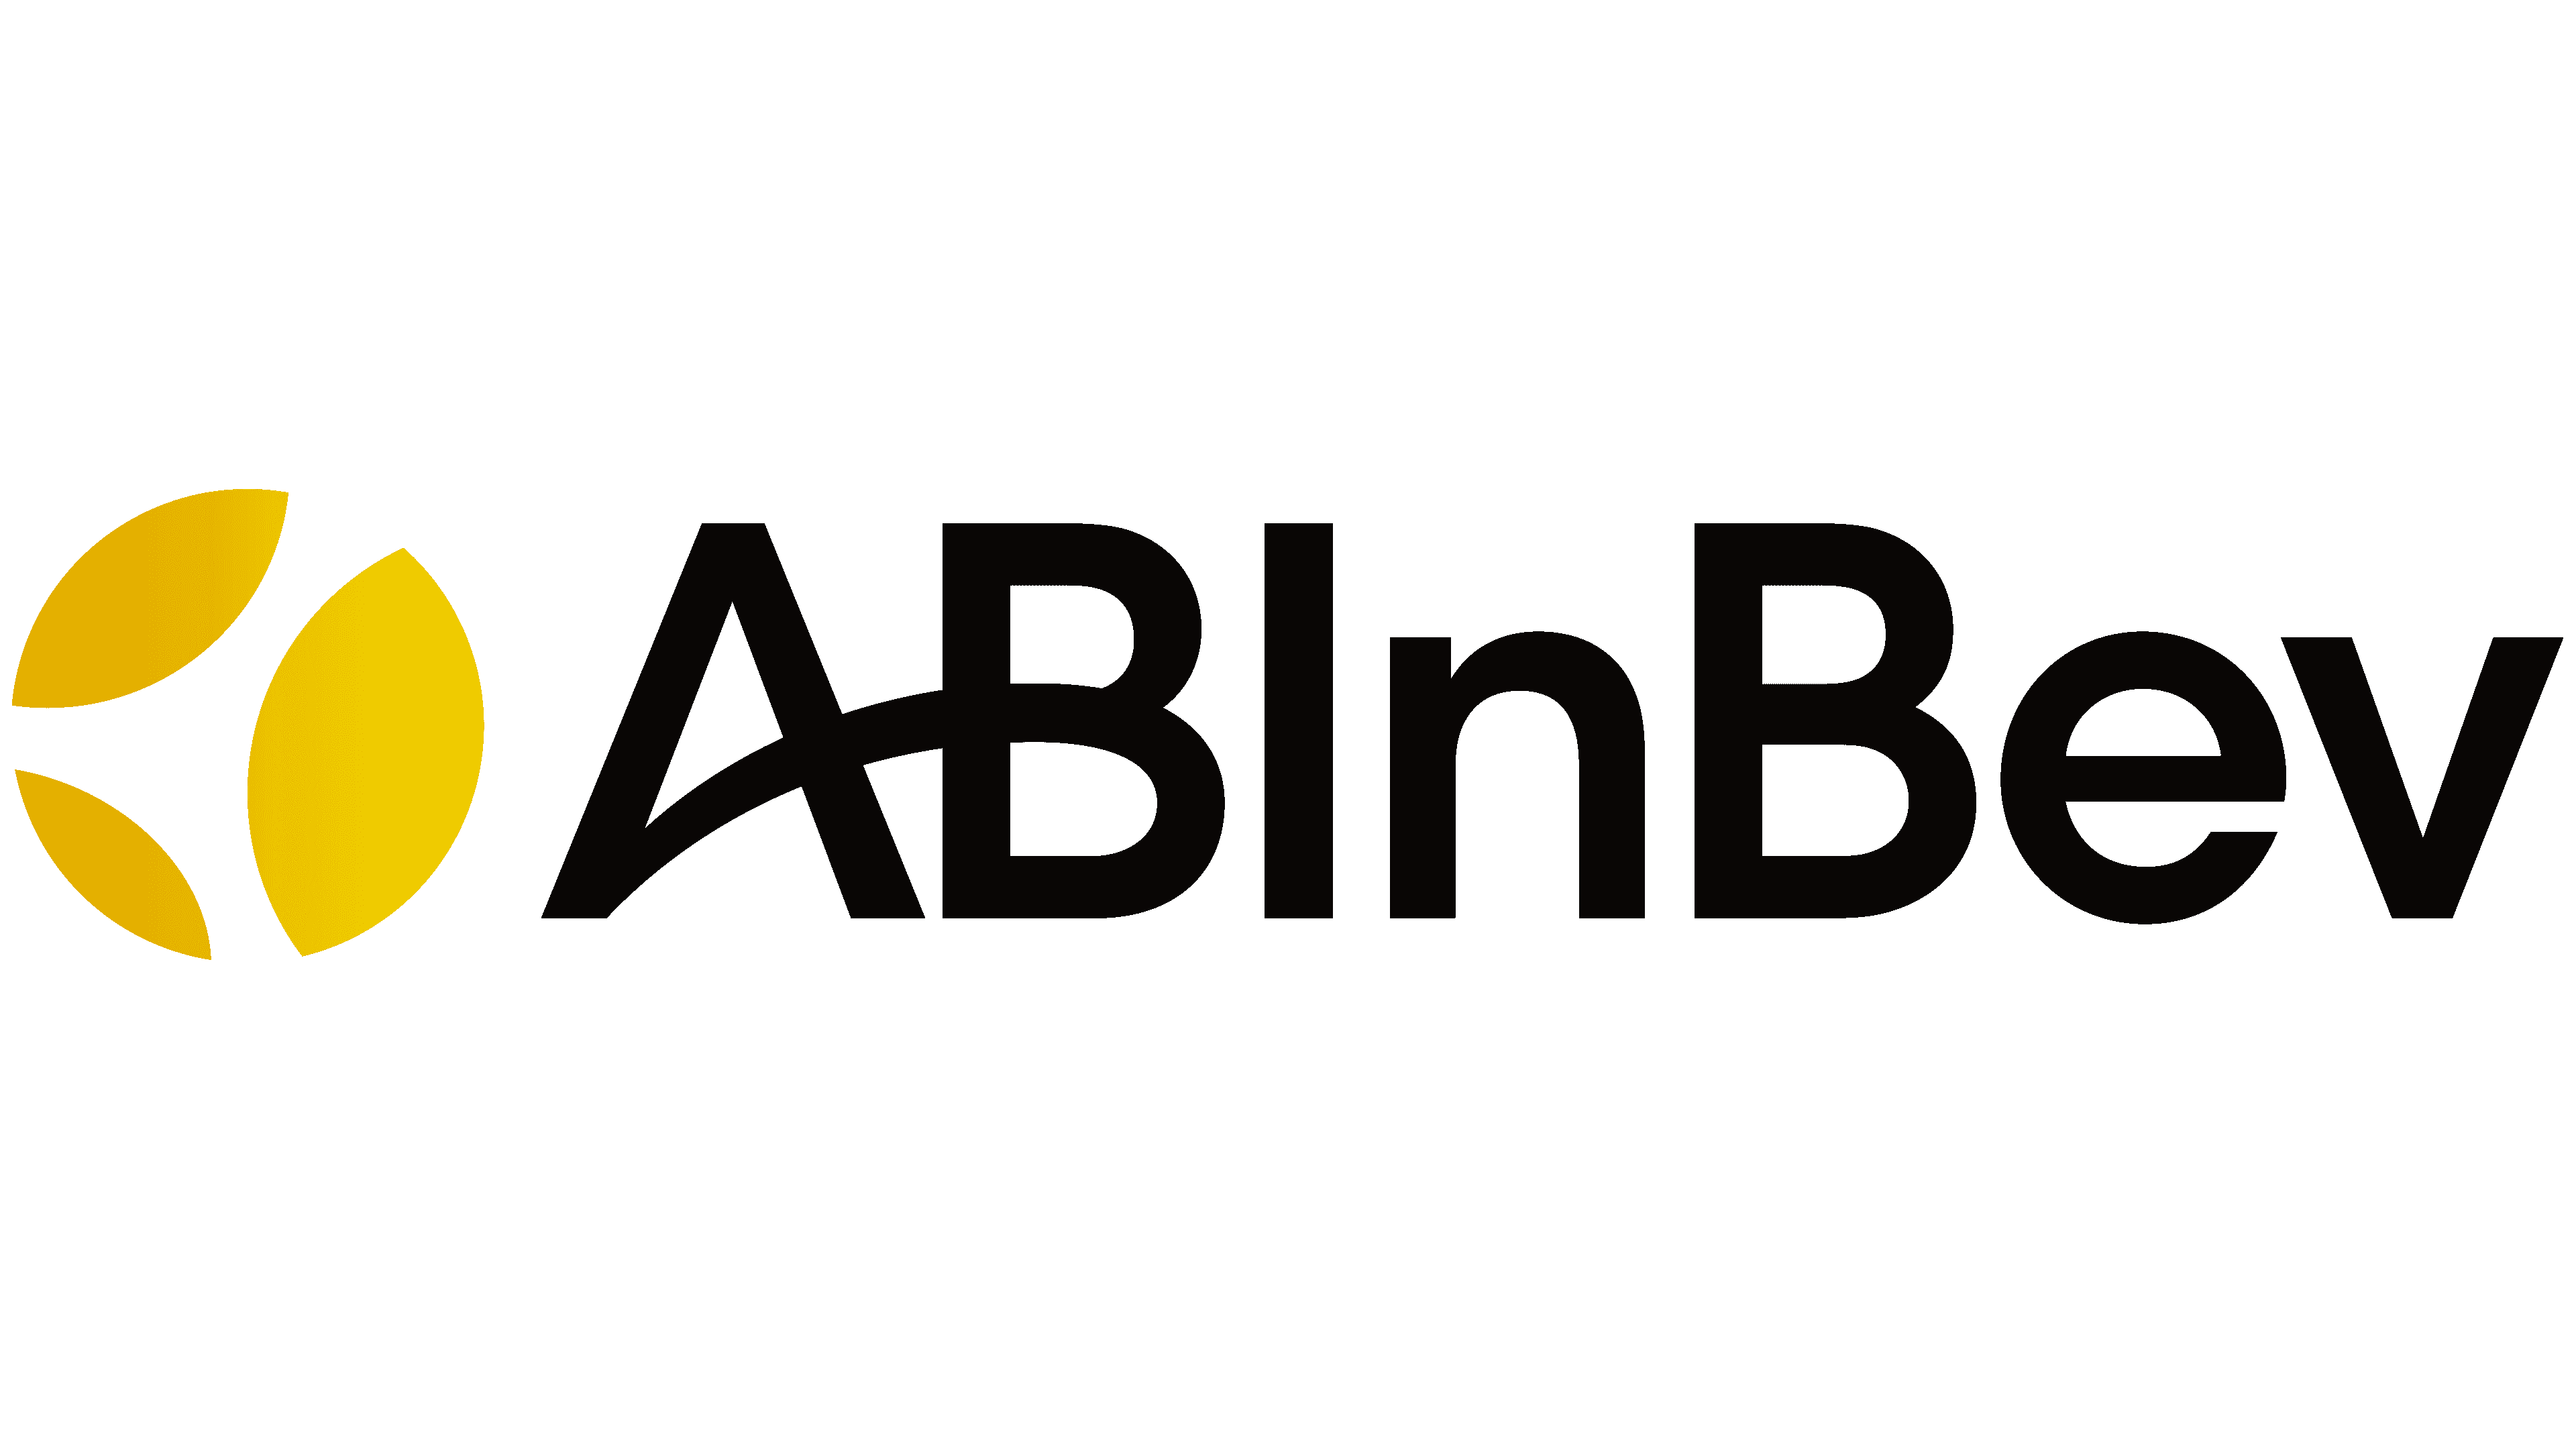 ab-inbev-logo-symbol-meaning-history-png-brand